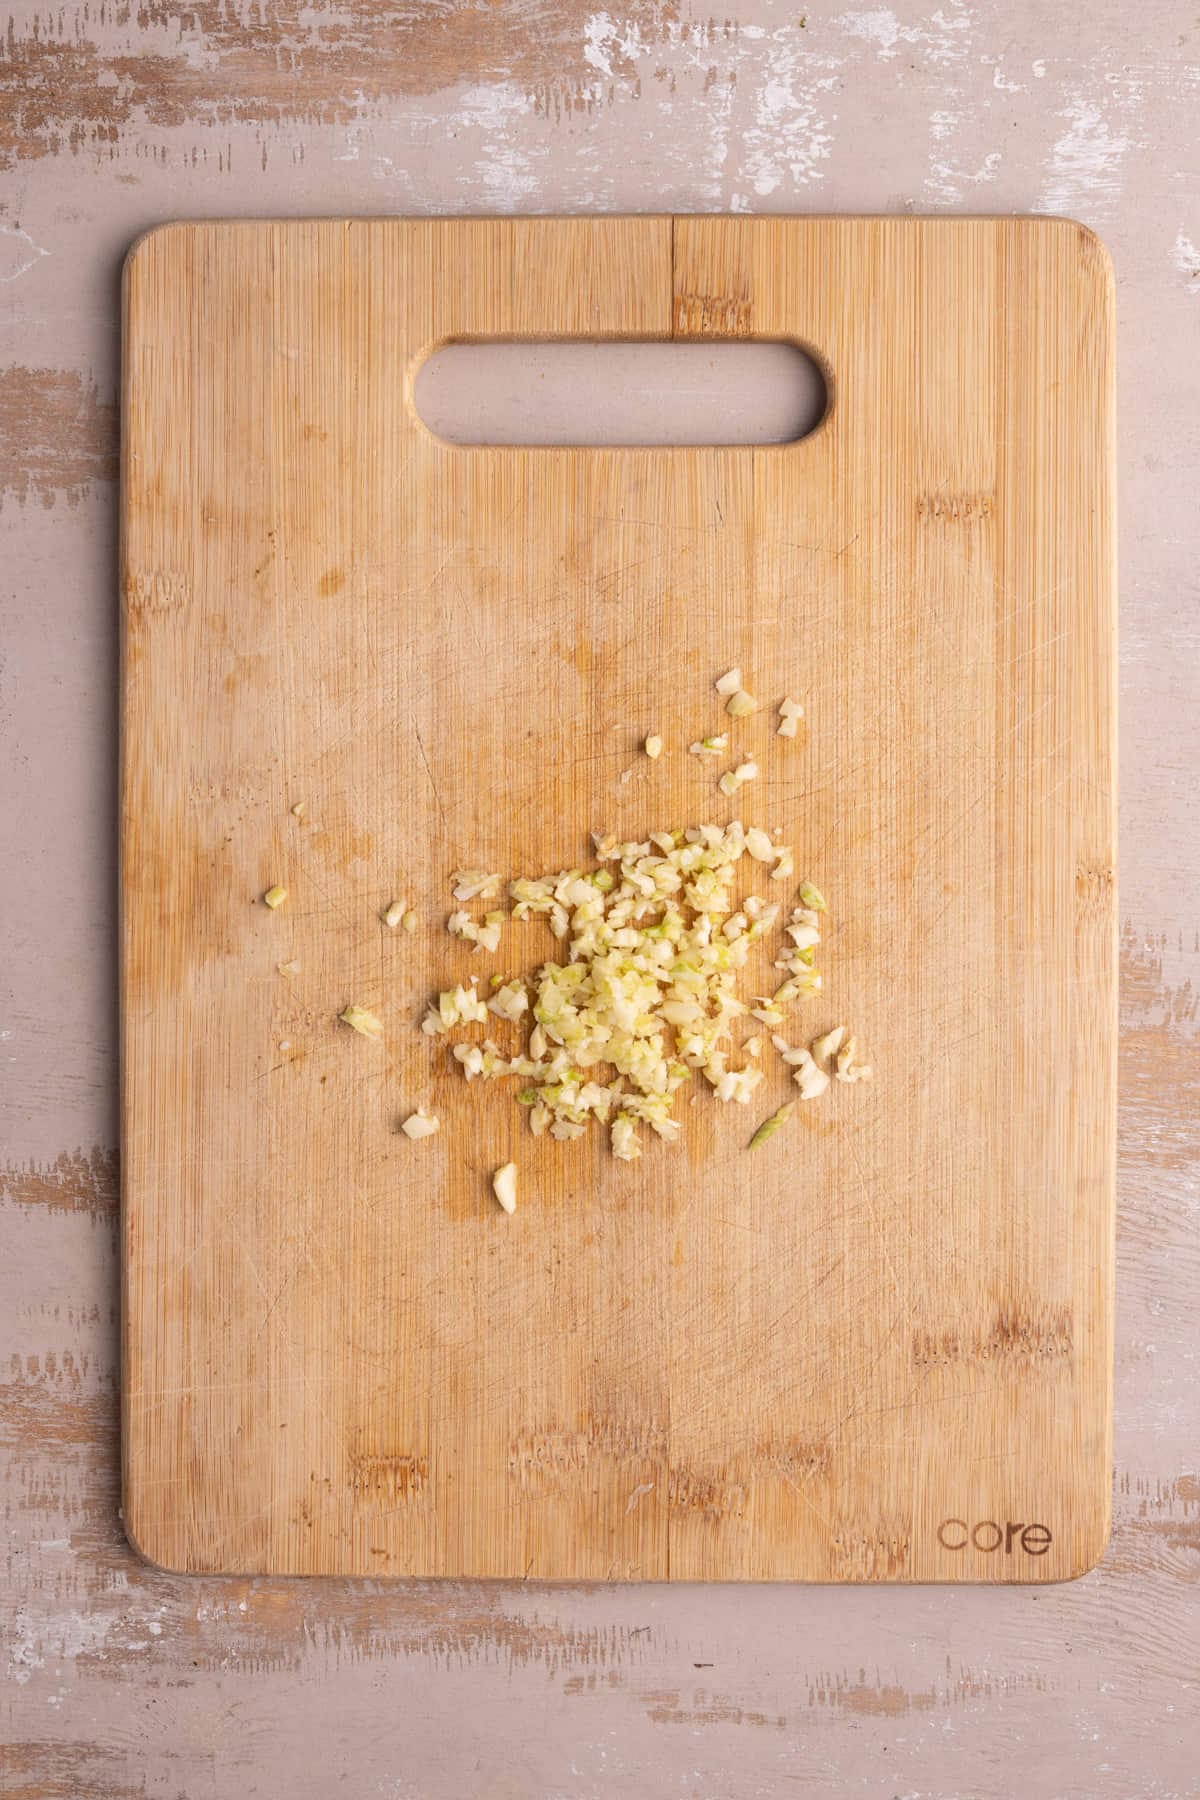 Minced garlic on a chopping board